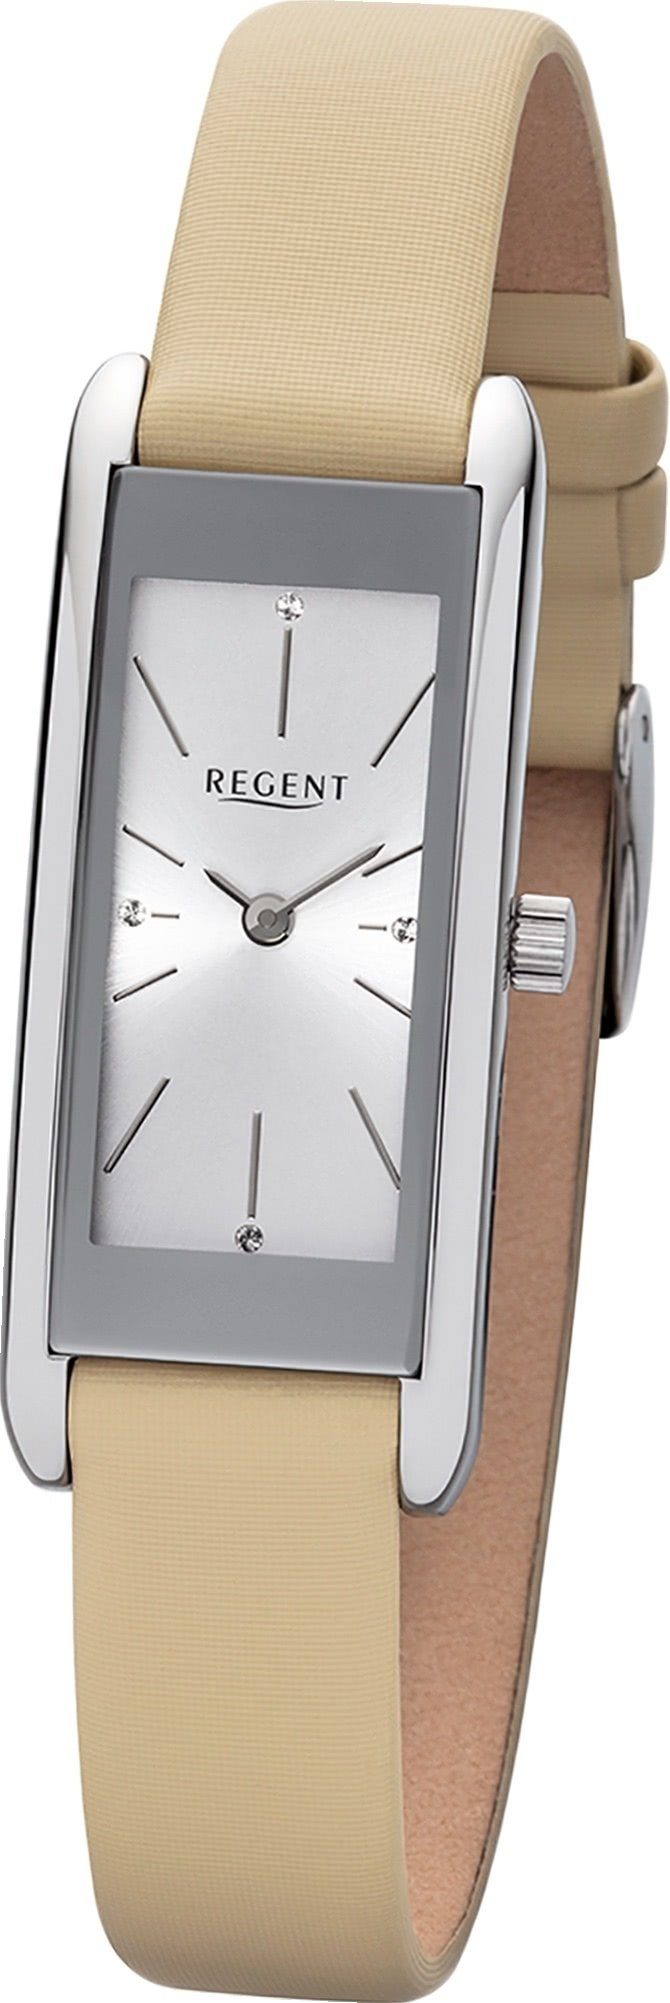 Regent Quarzuhr »D2URBA458 Regent Leder Damen Uhr BA-458 Analog«,  (Quarzuhr), Damenuhr mit Lederarmband, eckiges Gehäuse, groß (ca. 41mm),  Elegant-Style online kaufen | OTTO